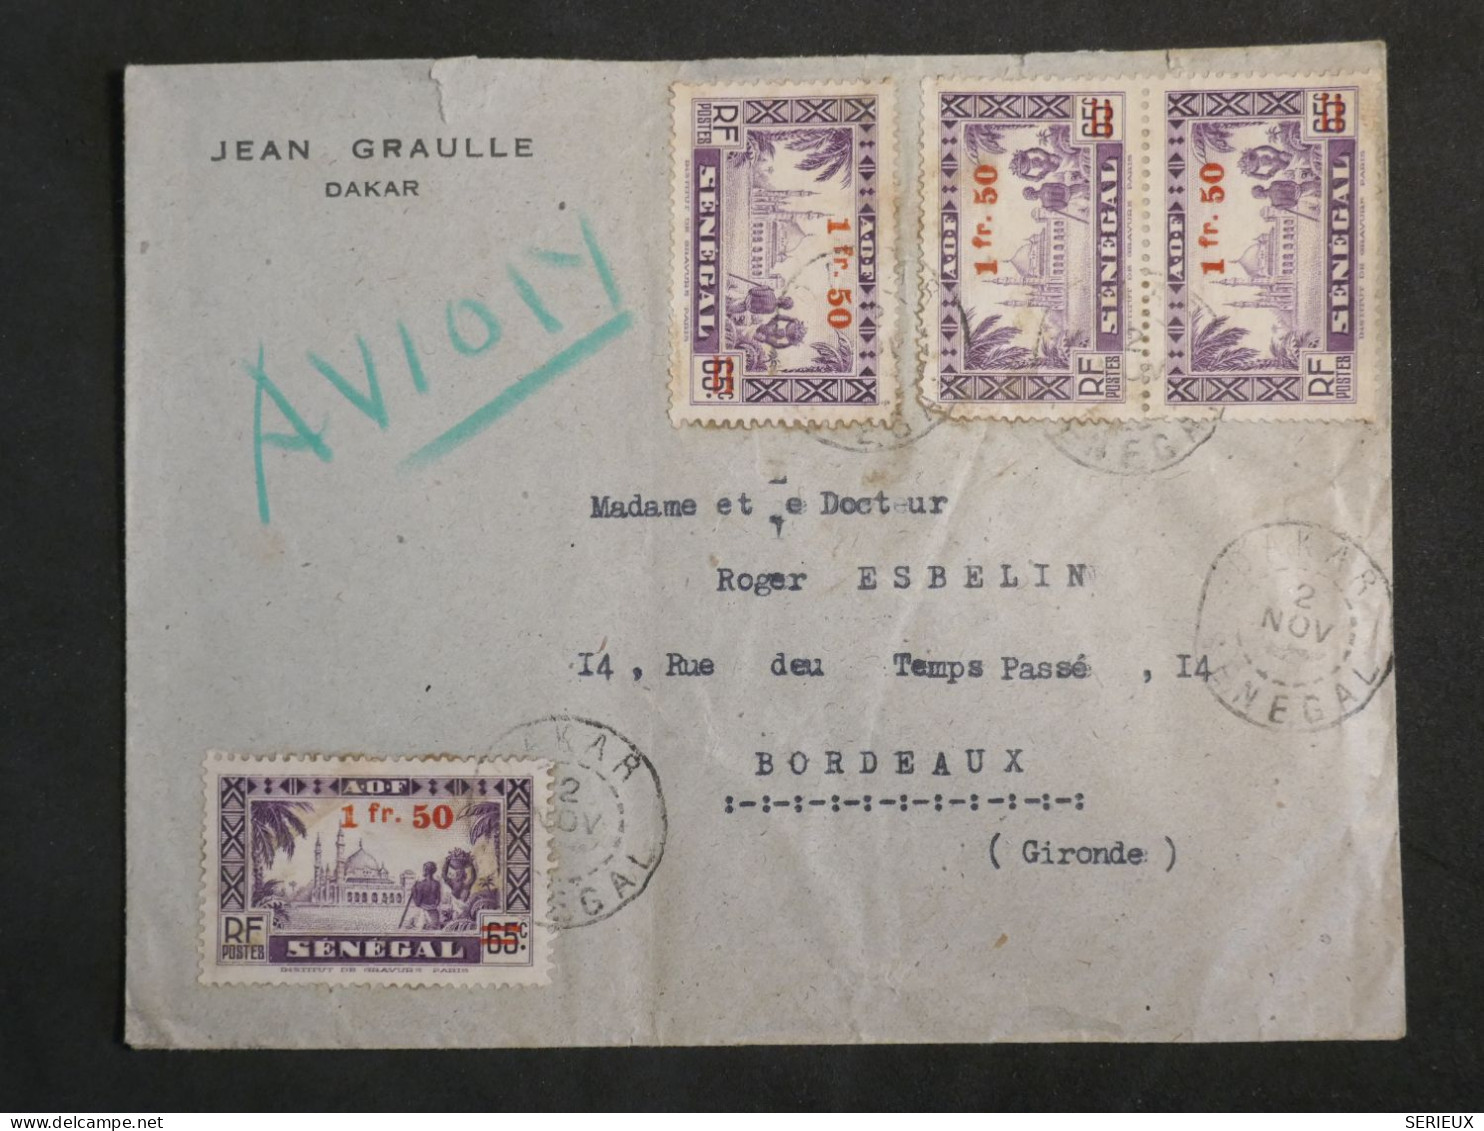 DM20 SENEGAL  BELLE  LETTRE   1938 A BORDEAUX   FRANCE +SURCHARGE +AFF.   INTERESSANT+ + - Covers & Documents